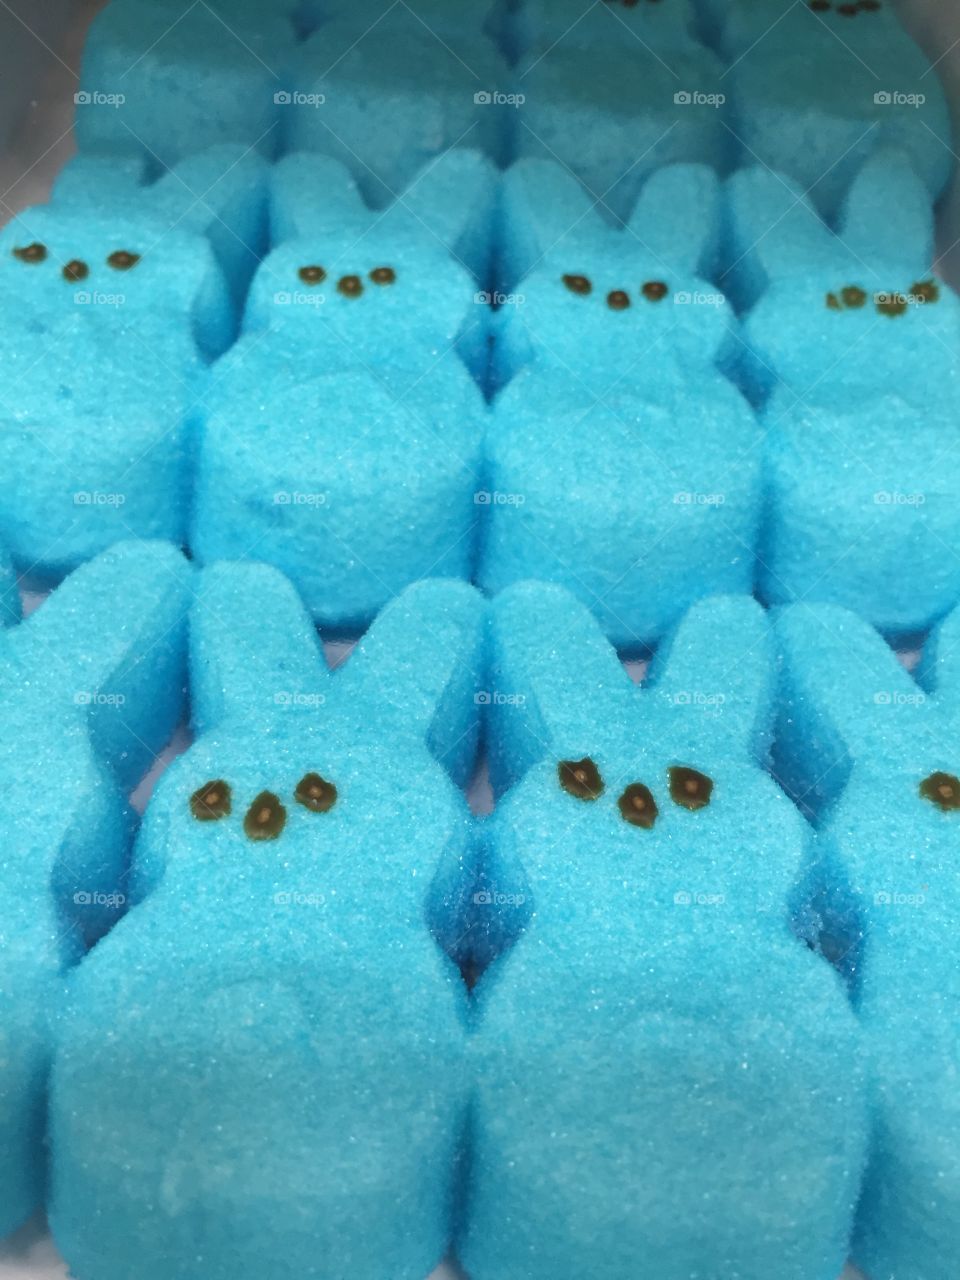 A sea of blue peeps 